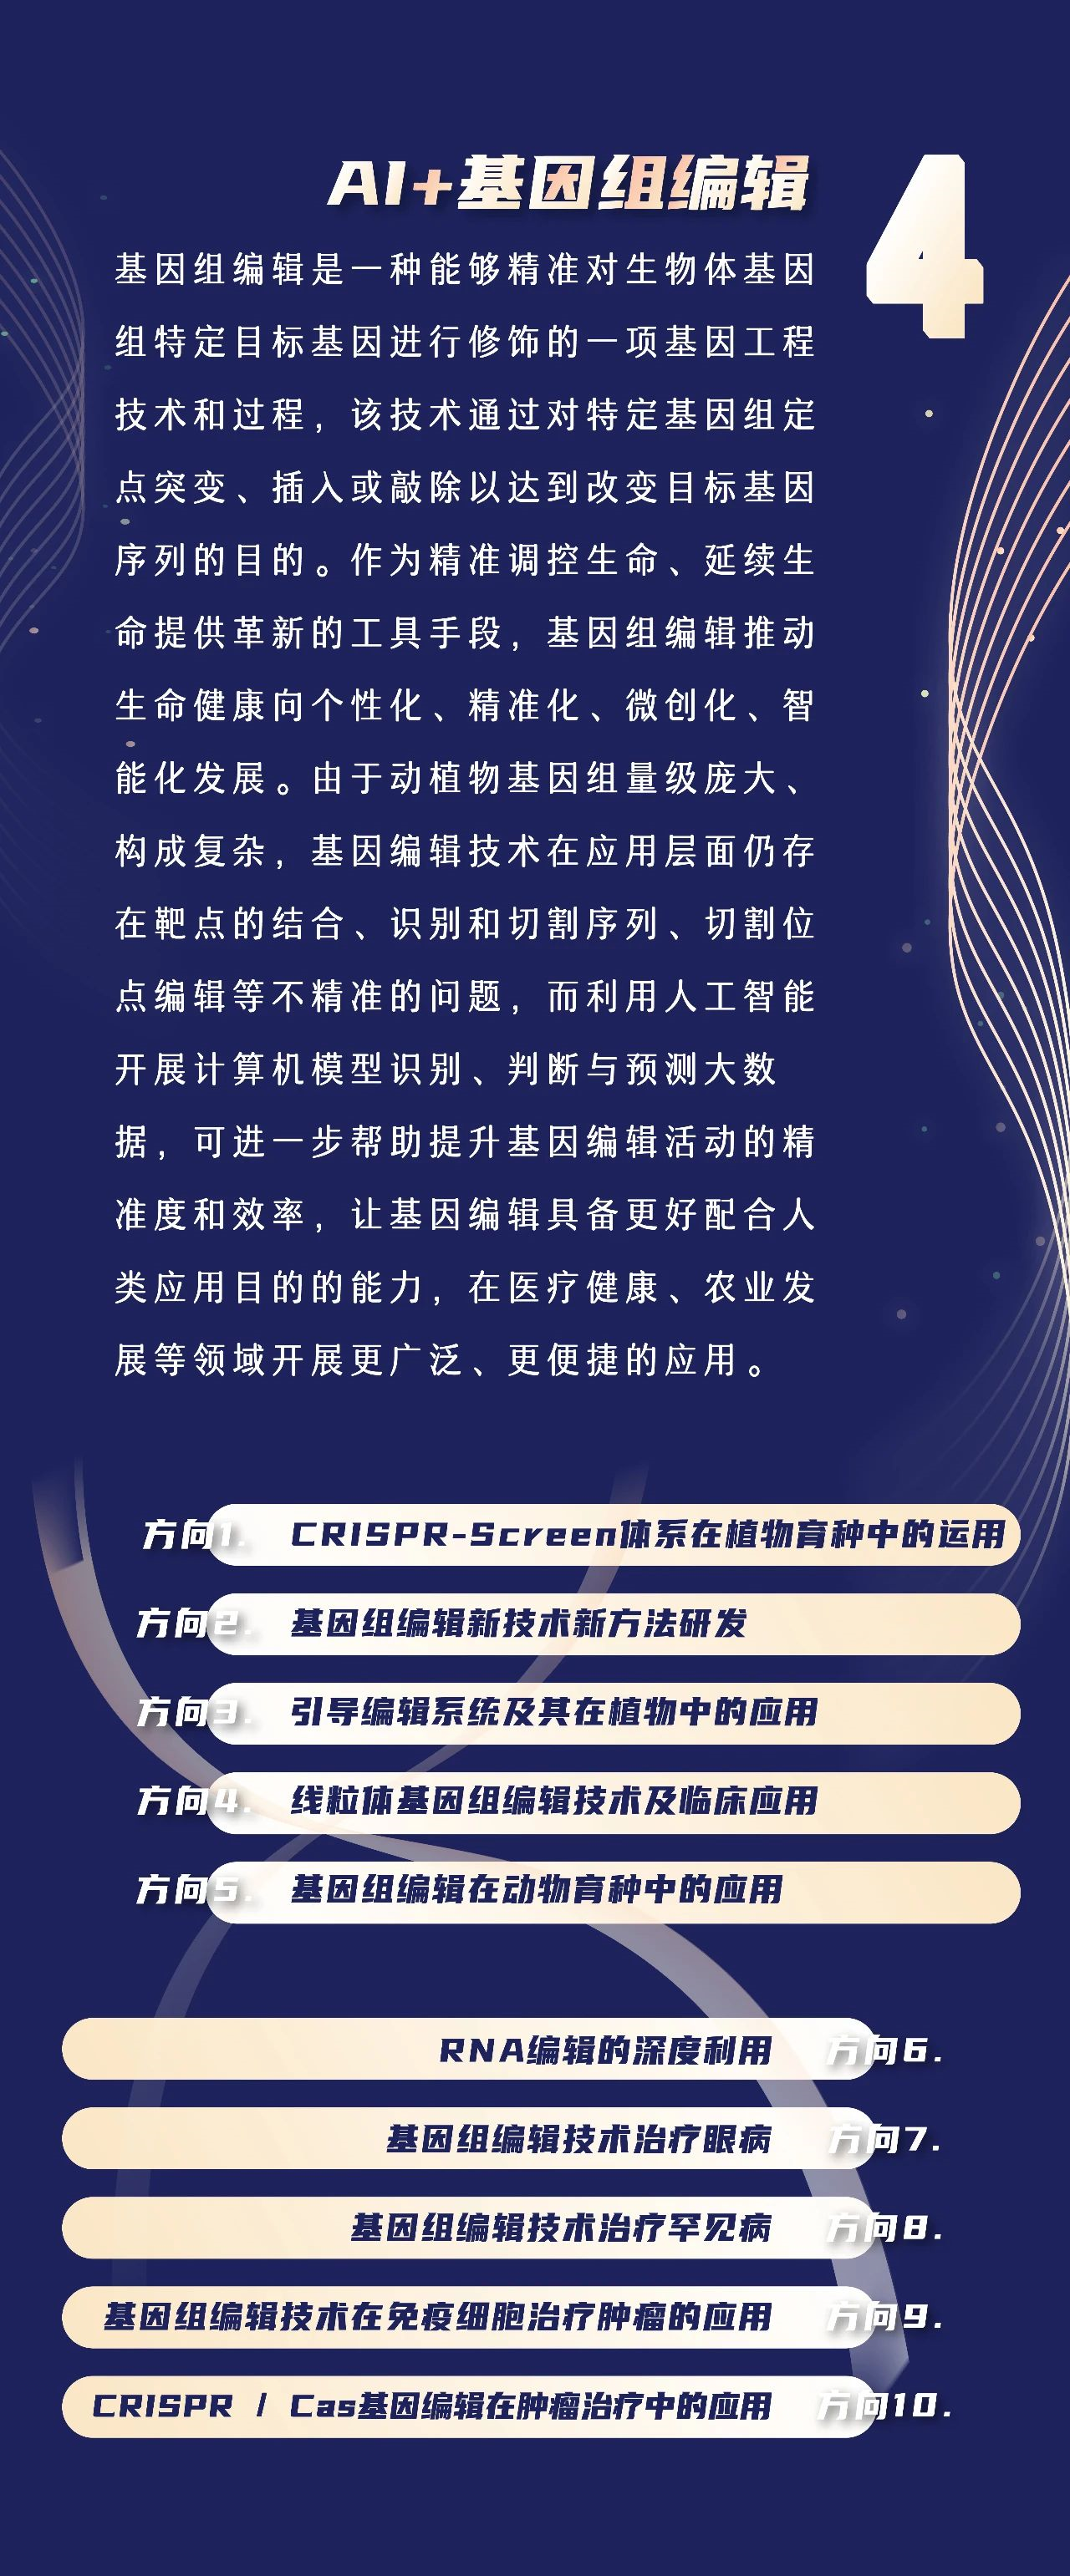 3、重庆大学、浙江大学、北京大学 文凭：哪些学校拥有国家认可的现代远程教育毕业证书？